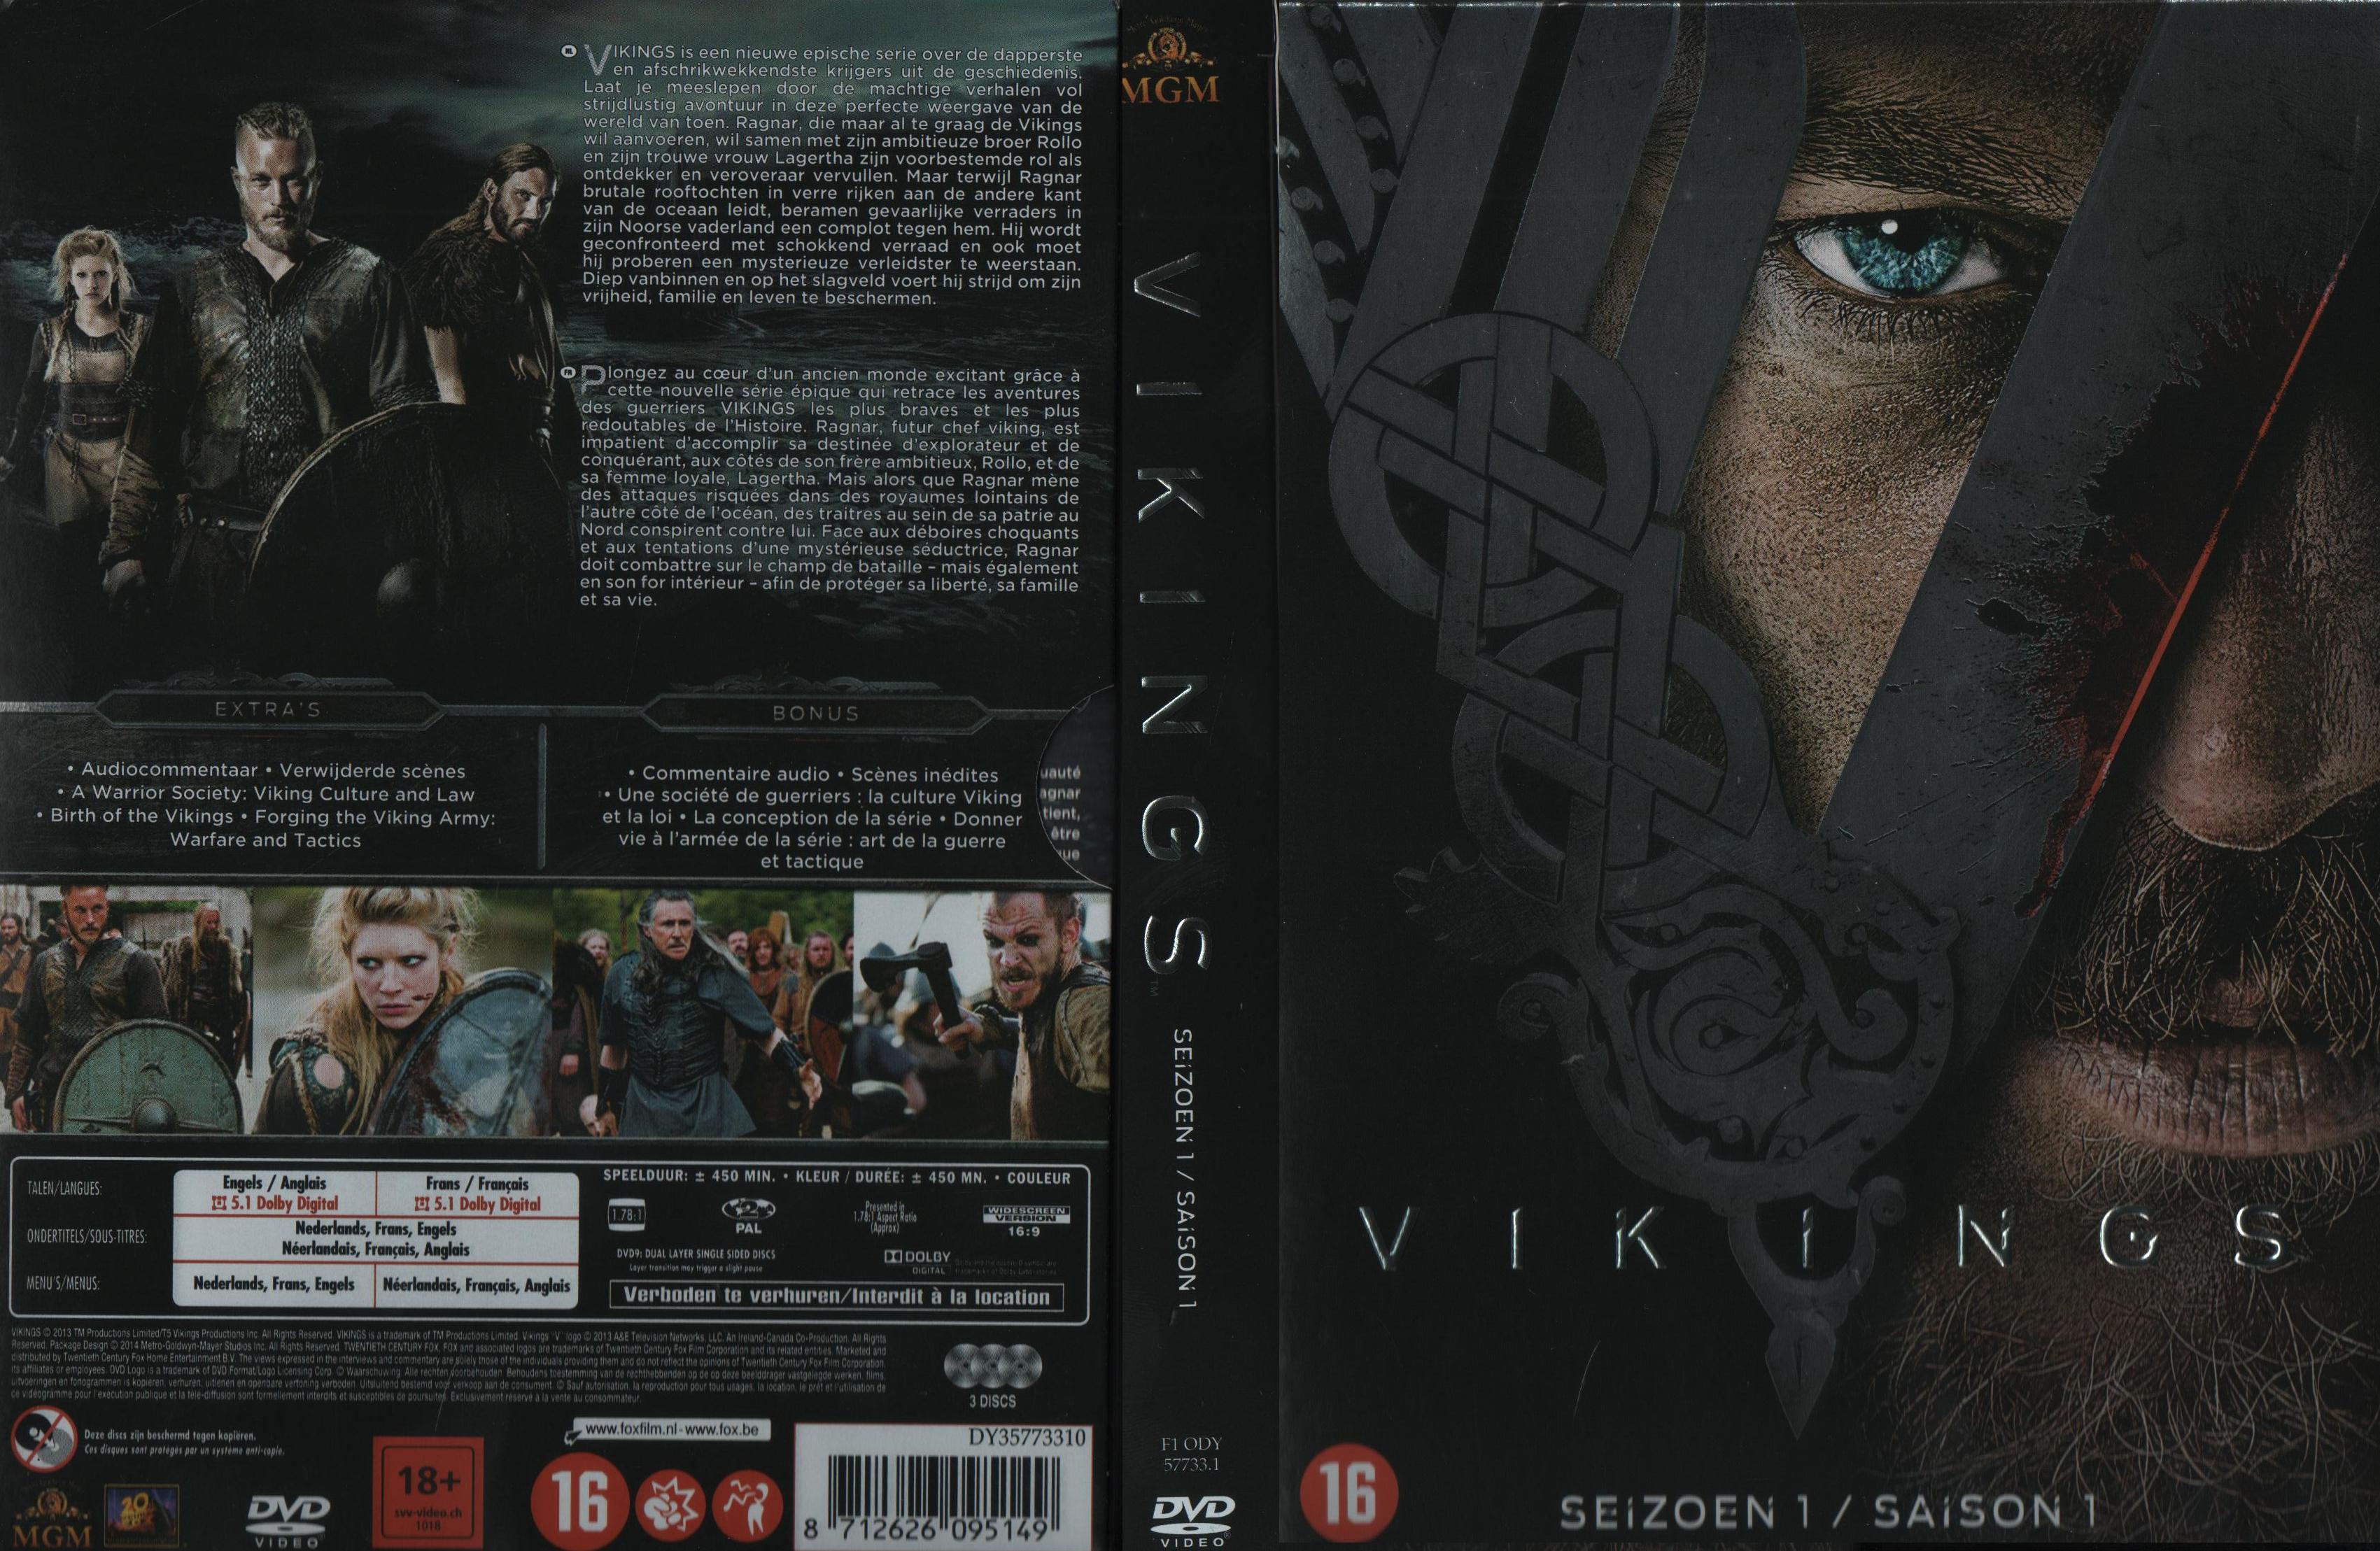 Jaquette DVD Vikings Saison 1 COFFRET